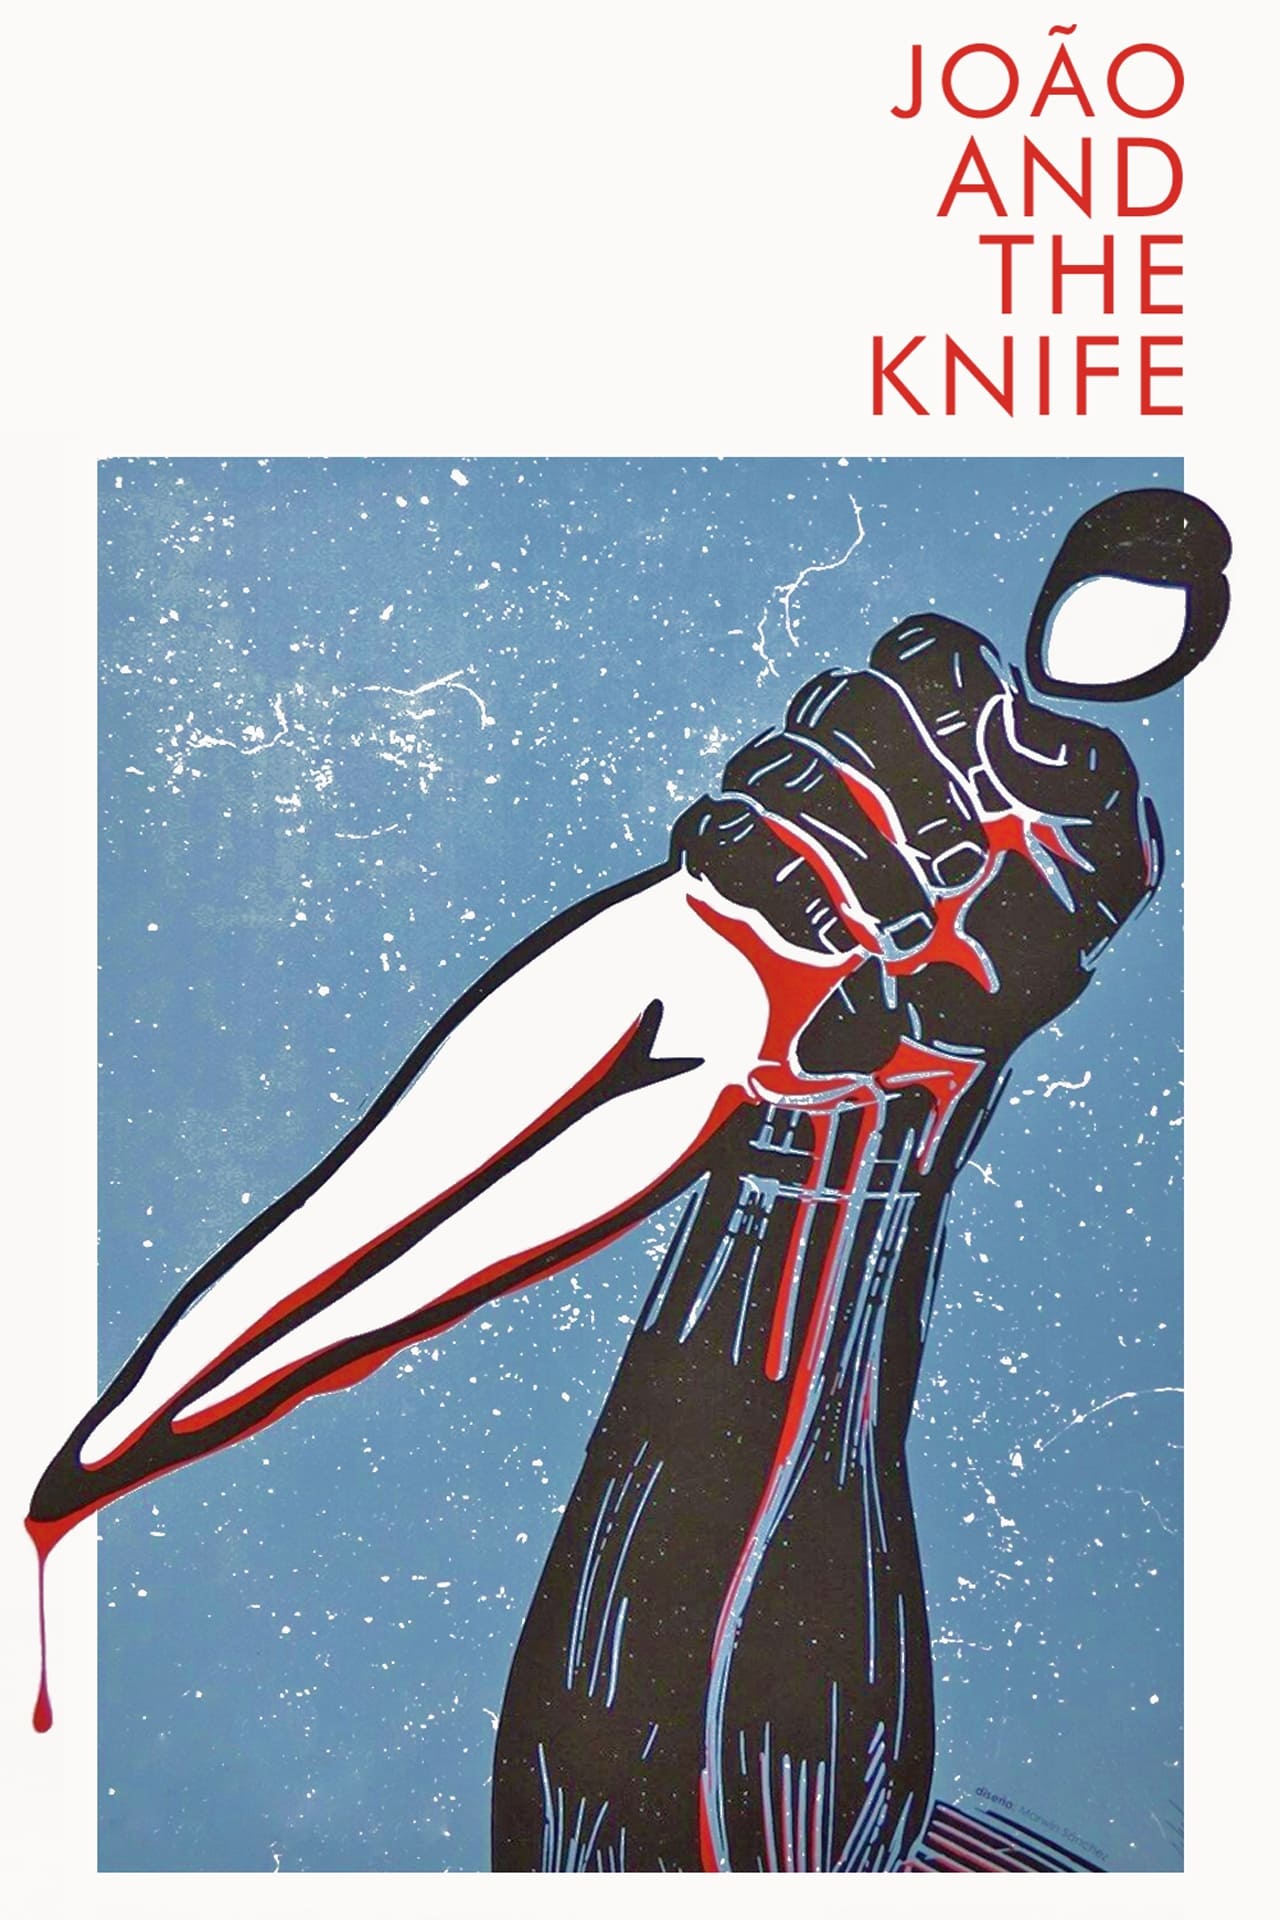 João and the Knife